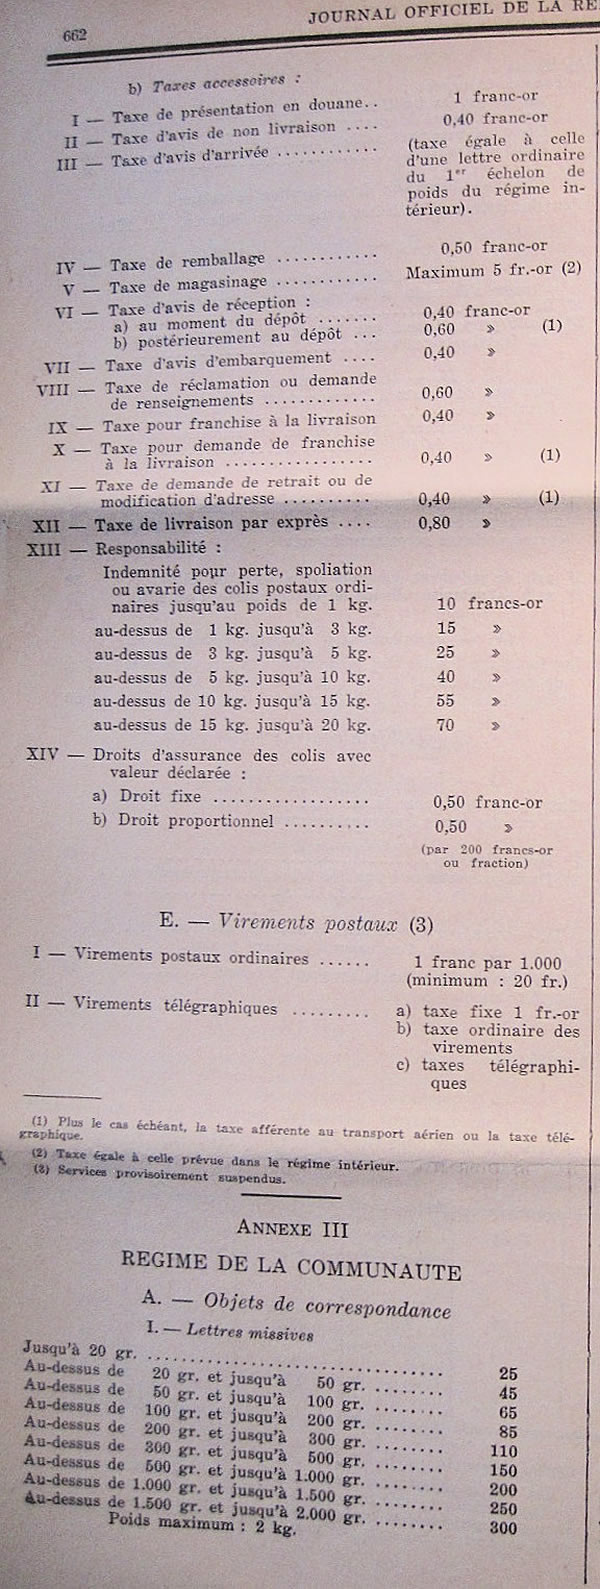 tarif du 16-07-1959 Cote d'Ivoire